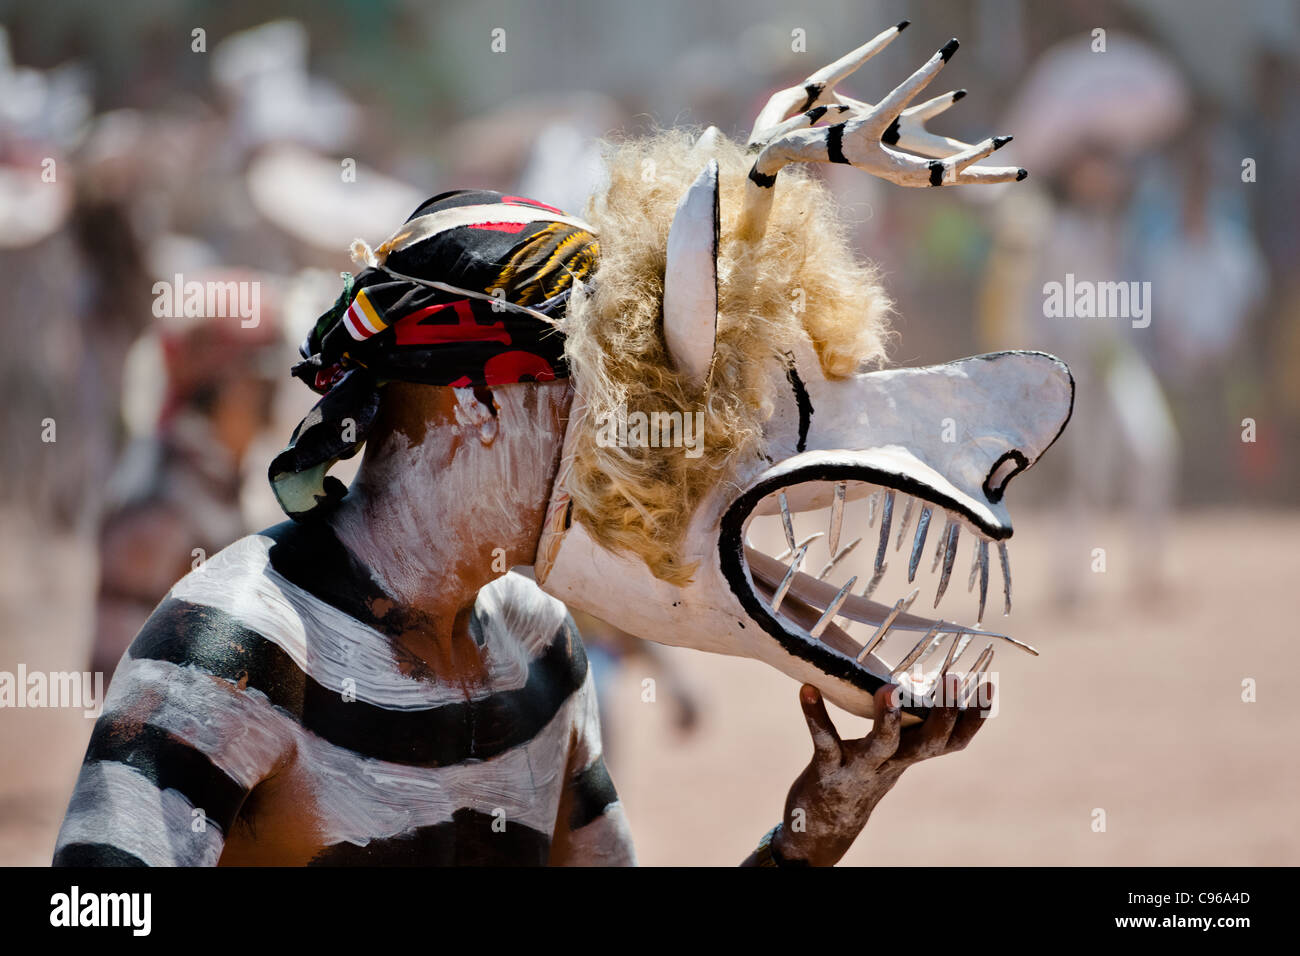 Ein Cora indischen Mann, trägt eine Dämonenmaske beteiligt sich an der religiösen rituellen Zeremonie der Karwoche in Jesús María, Mexiko. Stockfoto